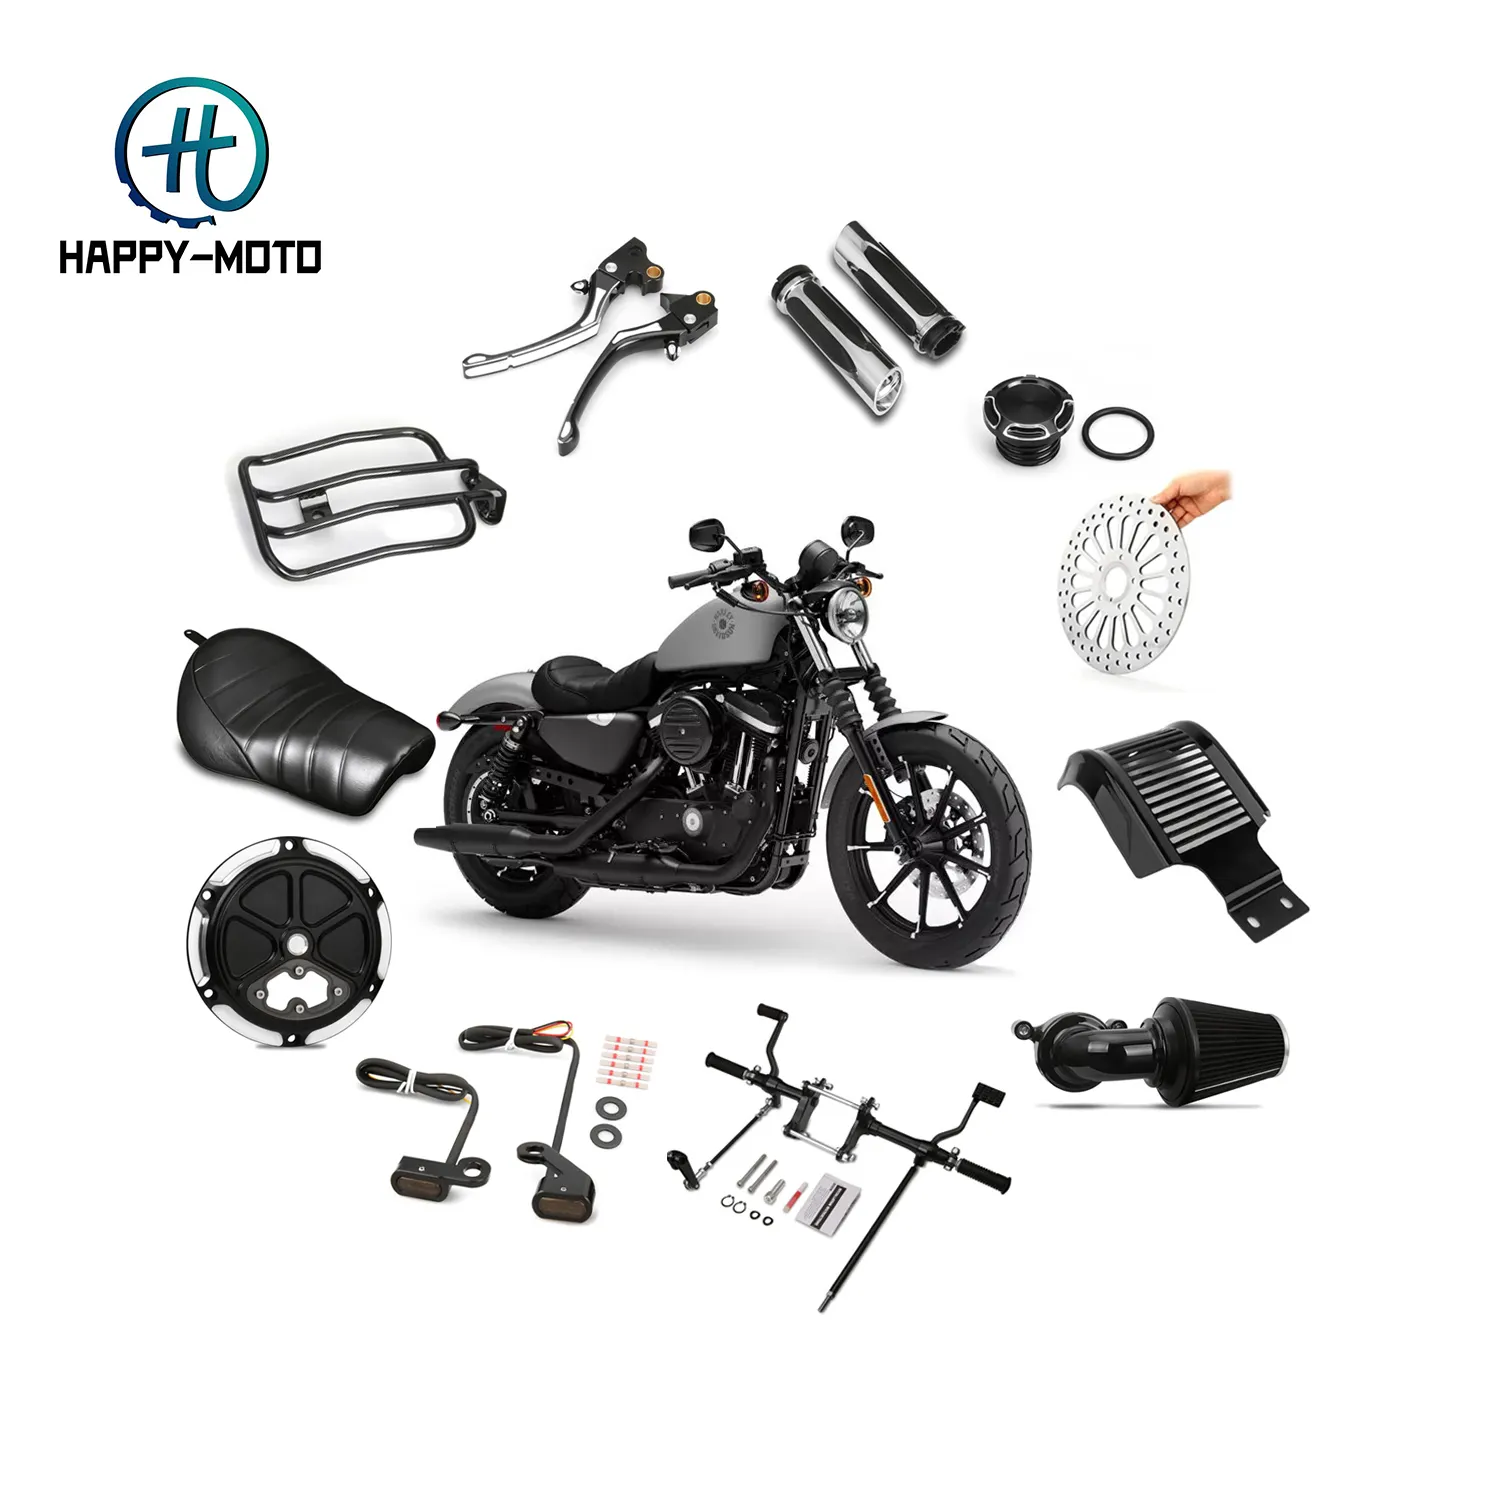 Toptan motor parçaları Sportster ileri kontrol kavrama koltuk hava filtresi işık Harley Davidson motosiklet özel aksesuarlar